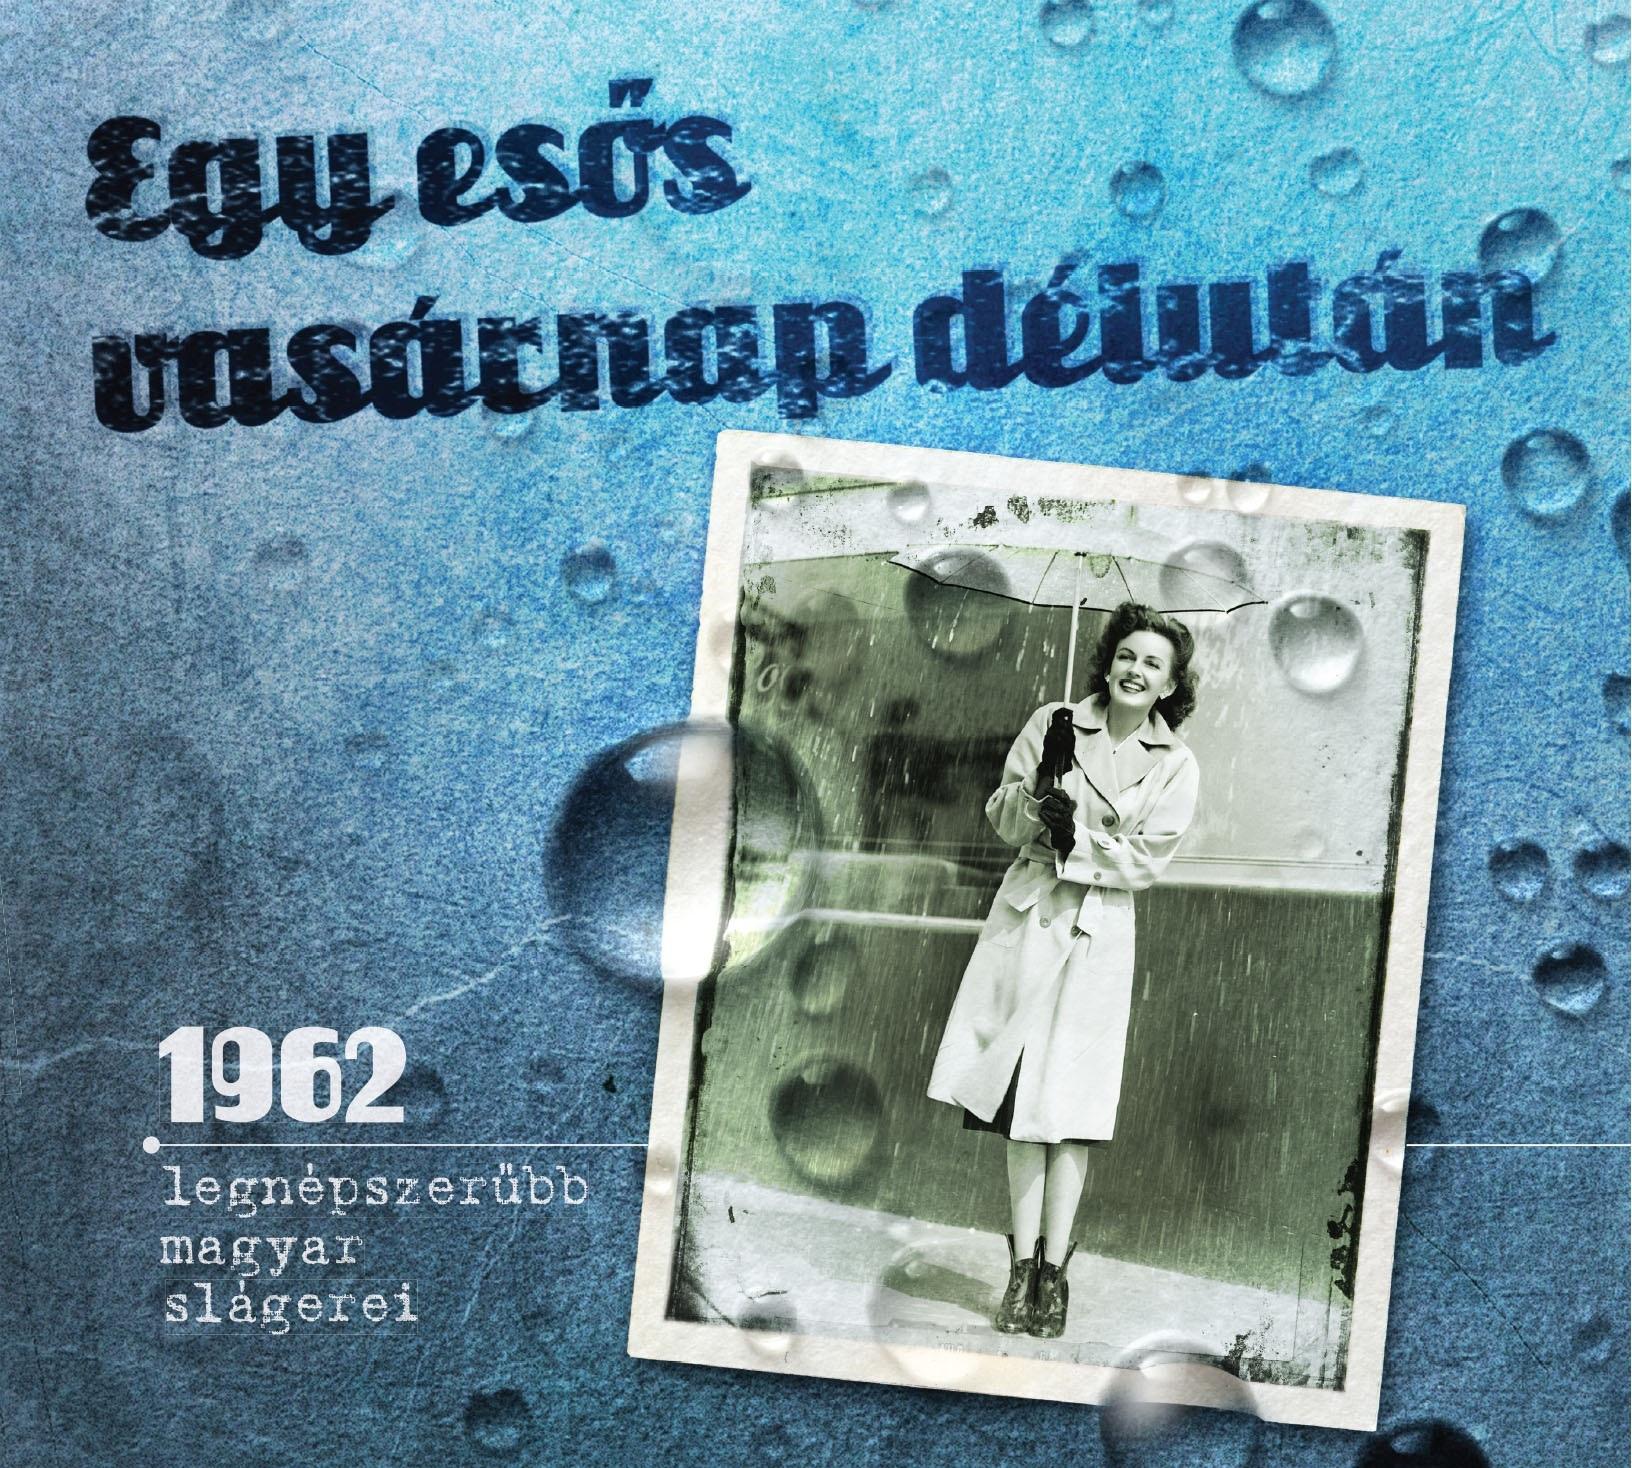  - Egy esős vasárnap délután - 1962 legnépszerűbb magyar slágerei.